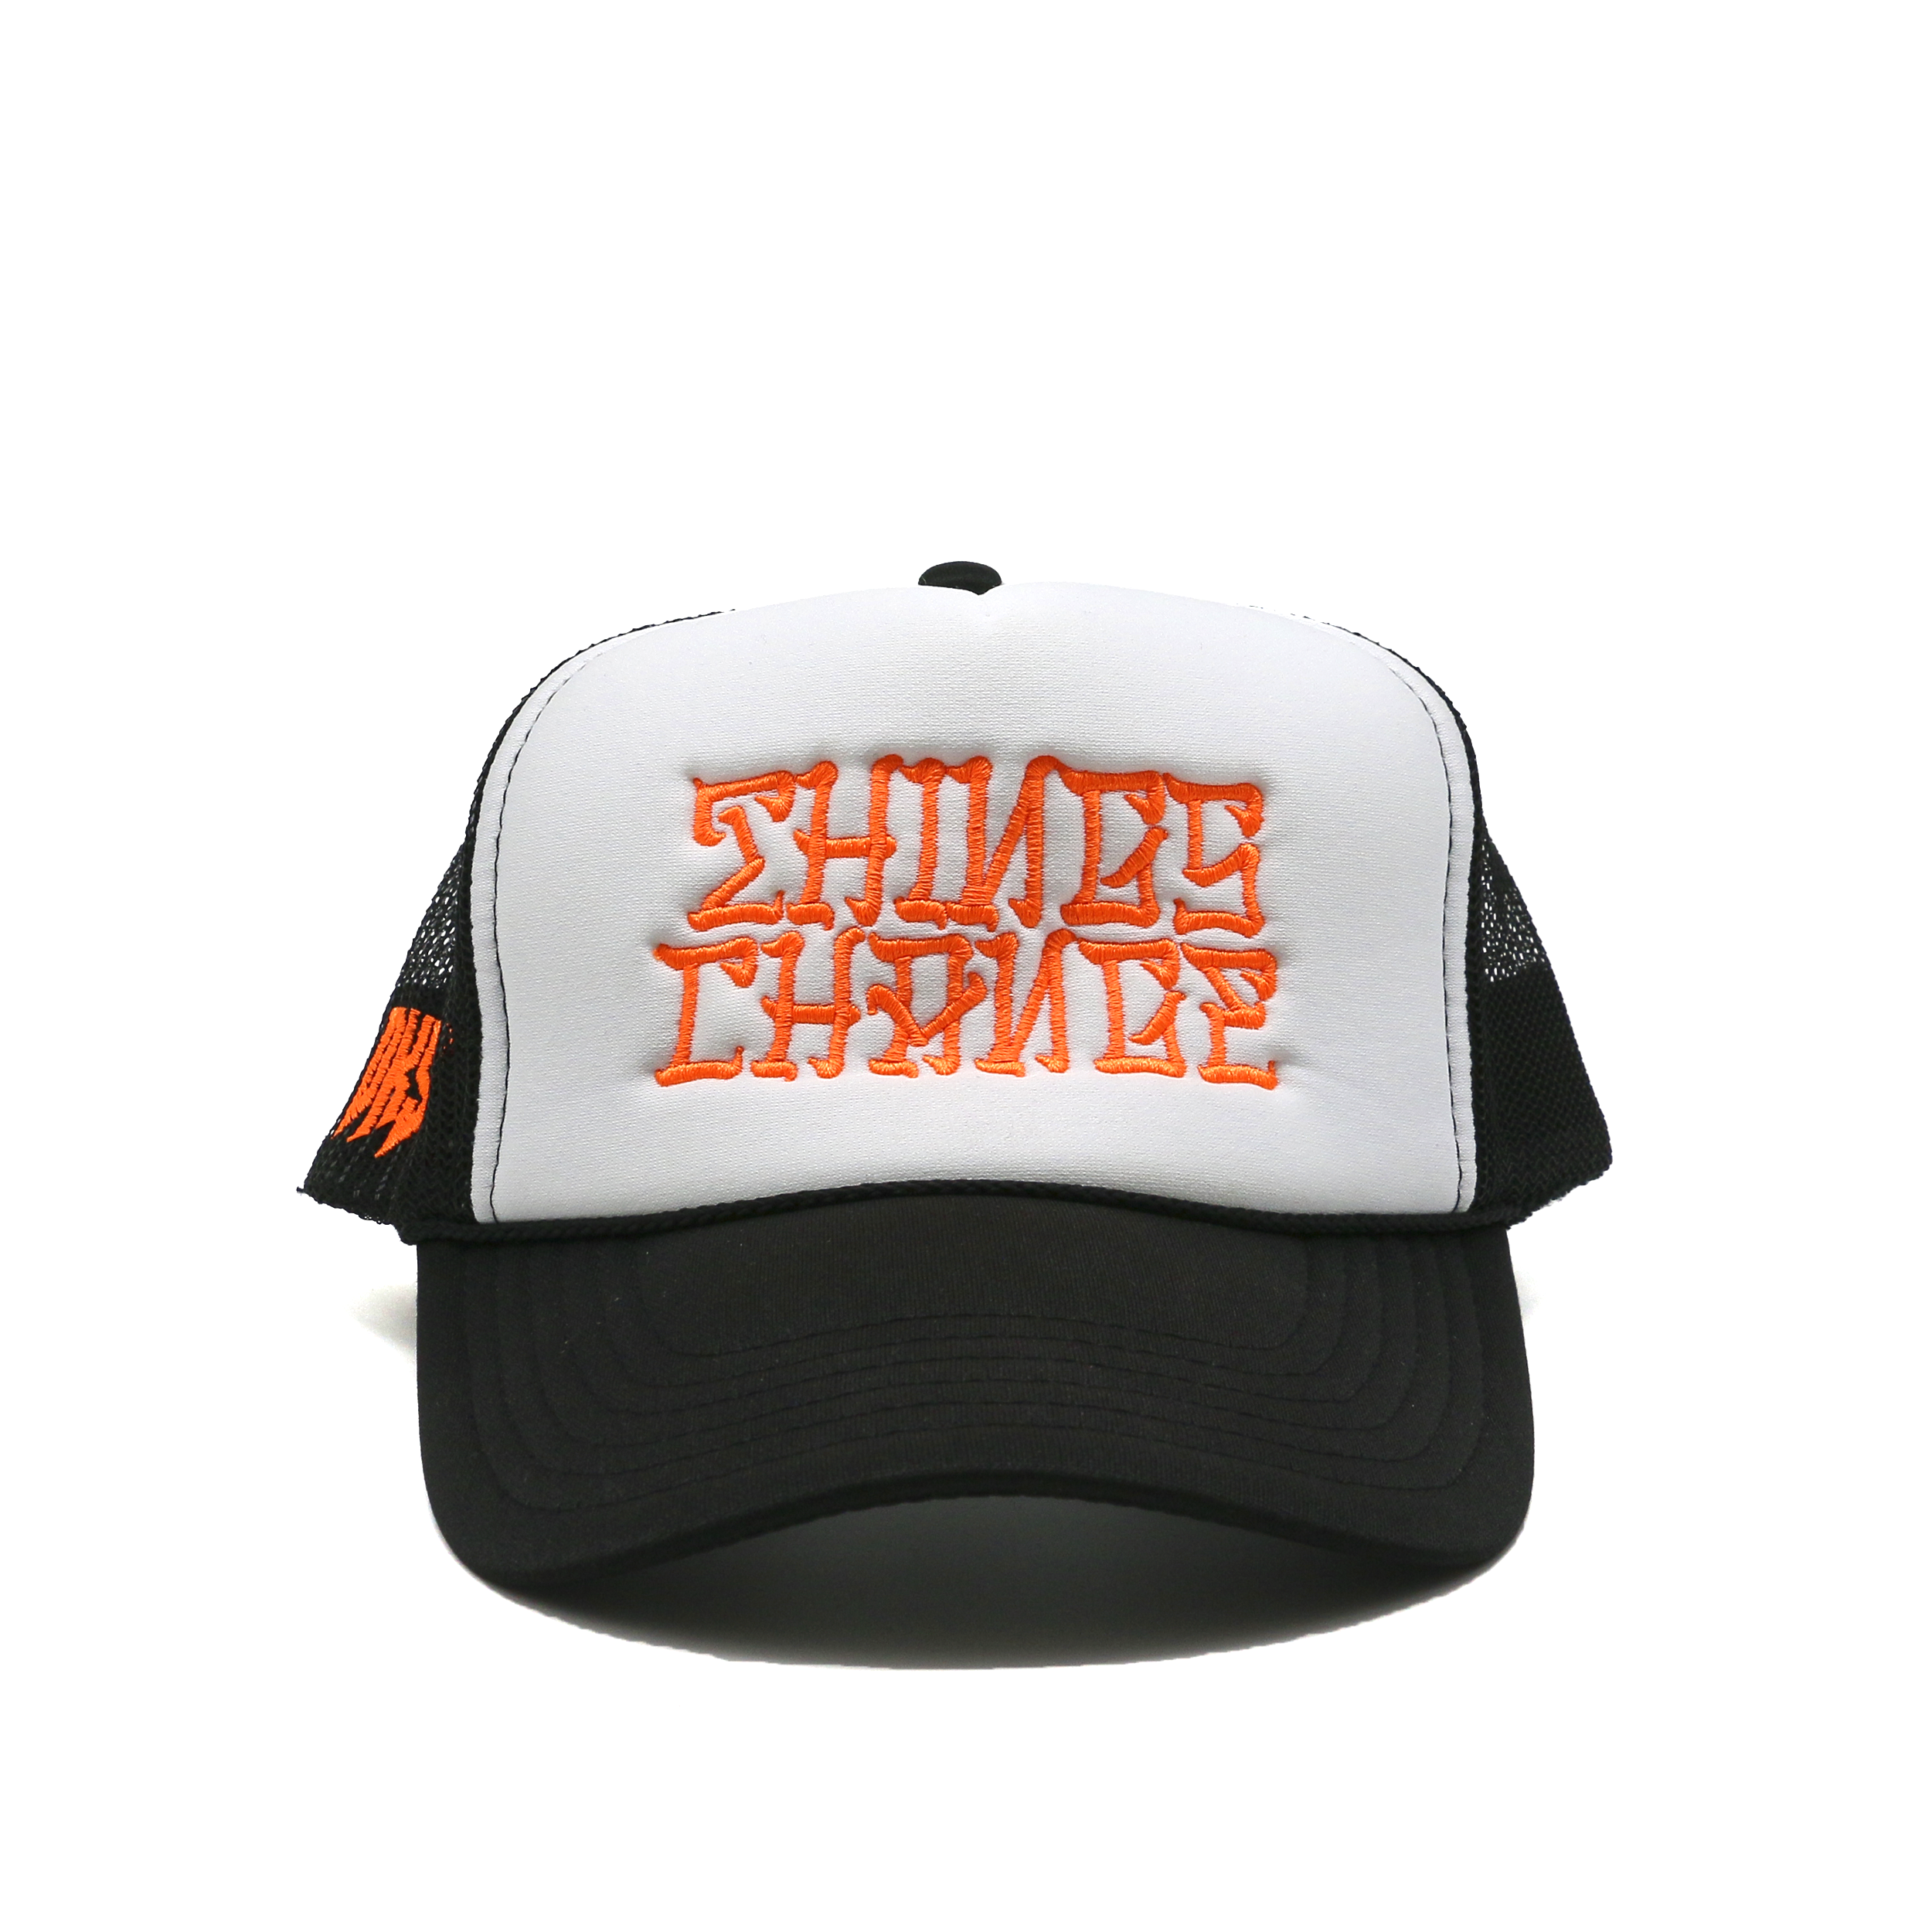 DKS "Things Change" Trucker Hat (Black/White/Orange)